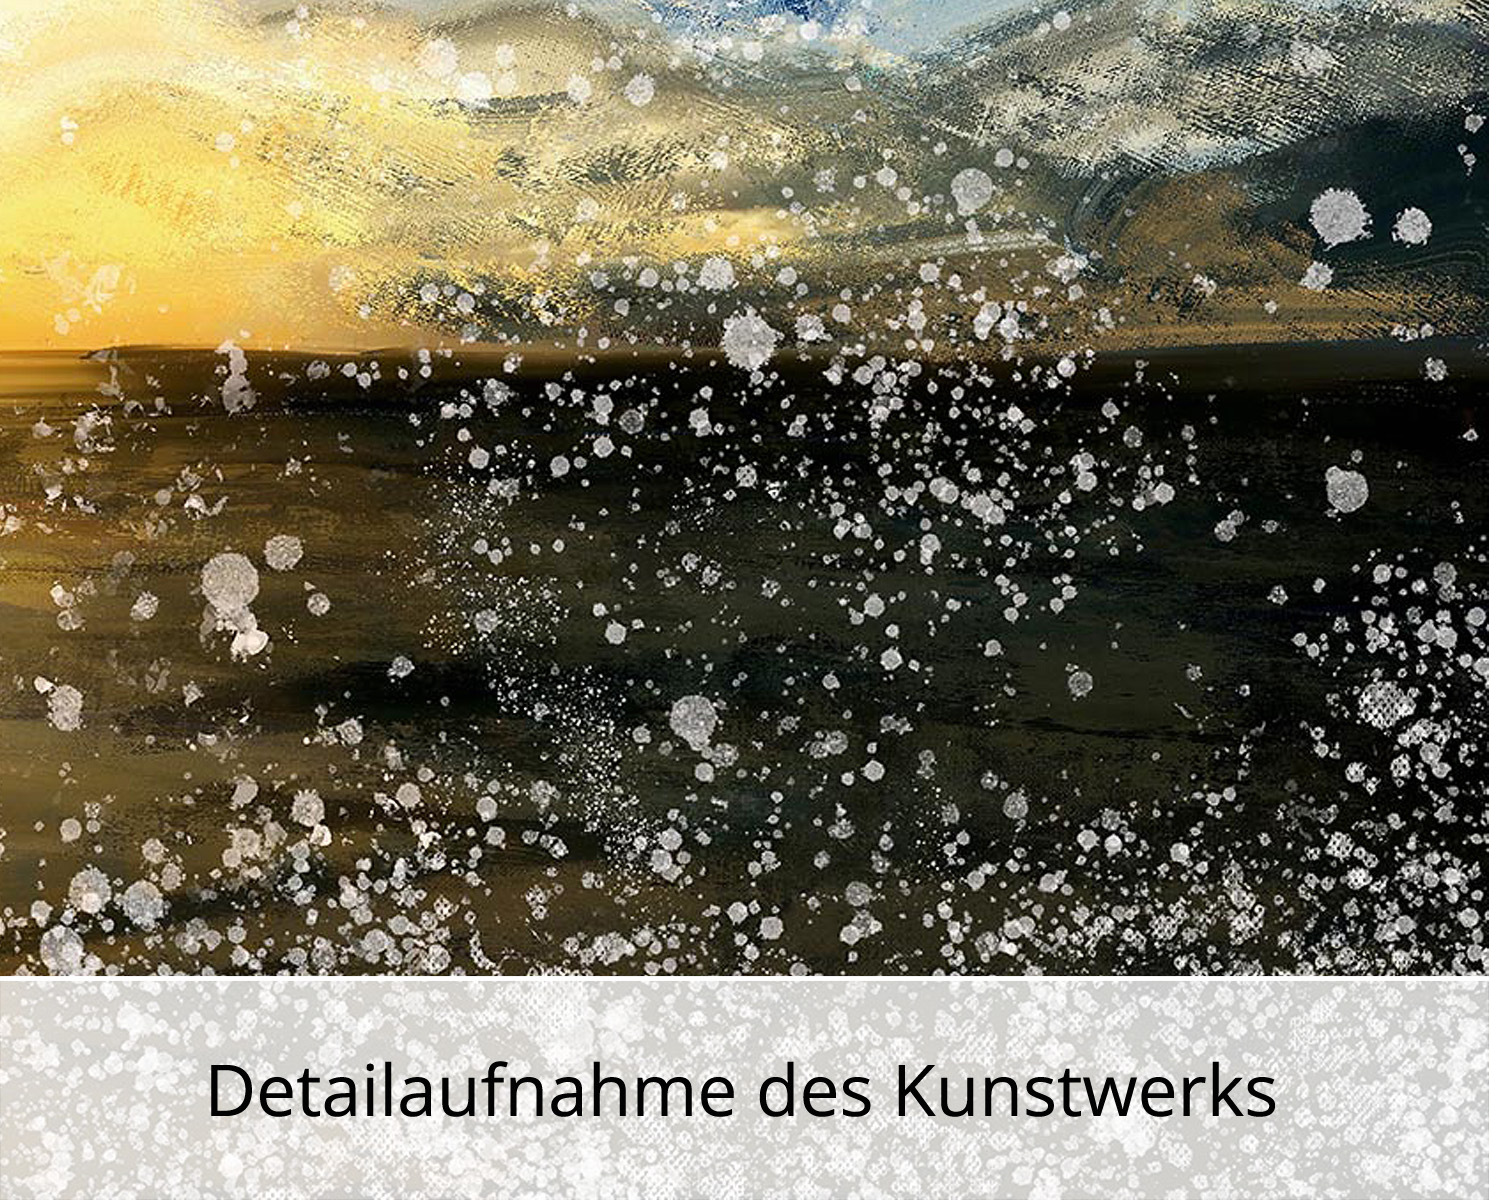 Kunstdruck, signiert: Sturm an der Küste III, Holger Mühlbauer-Gardemin, Edition